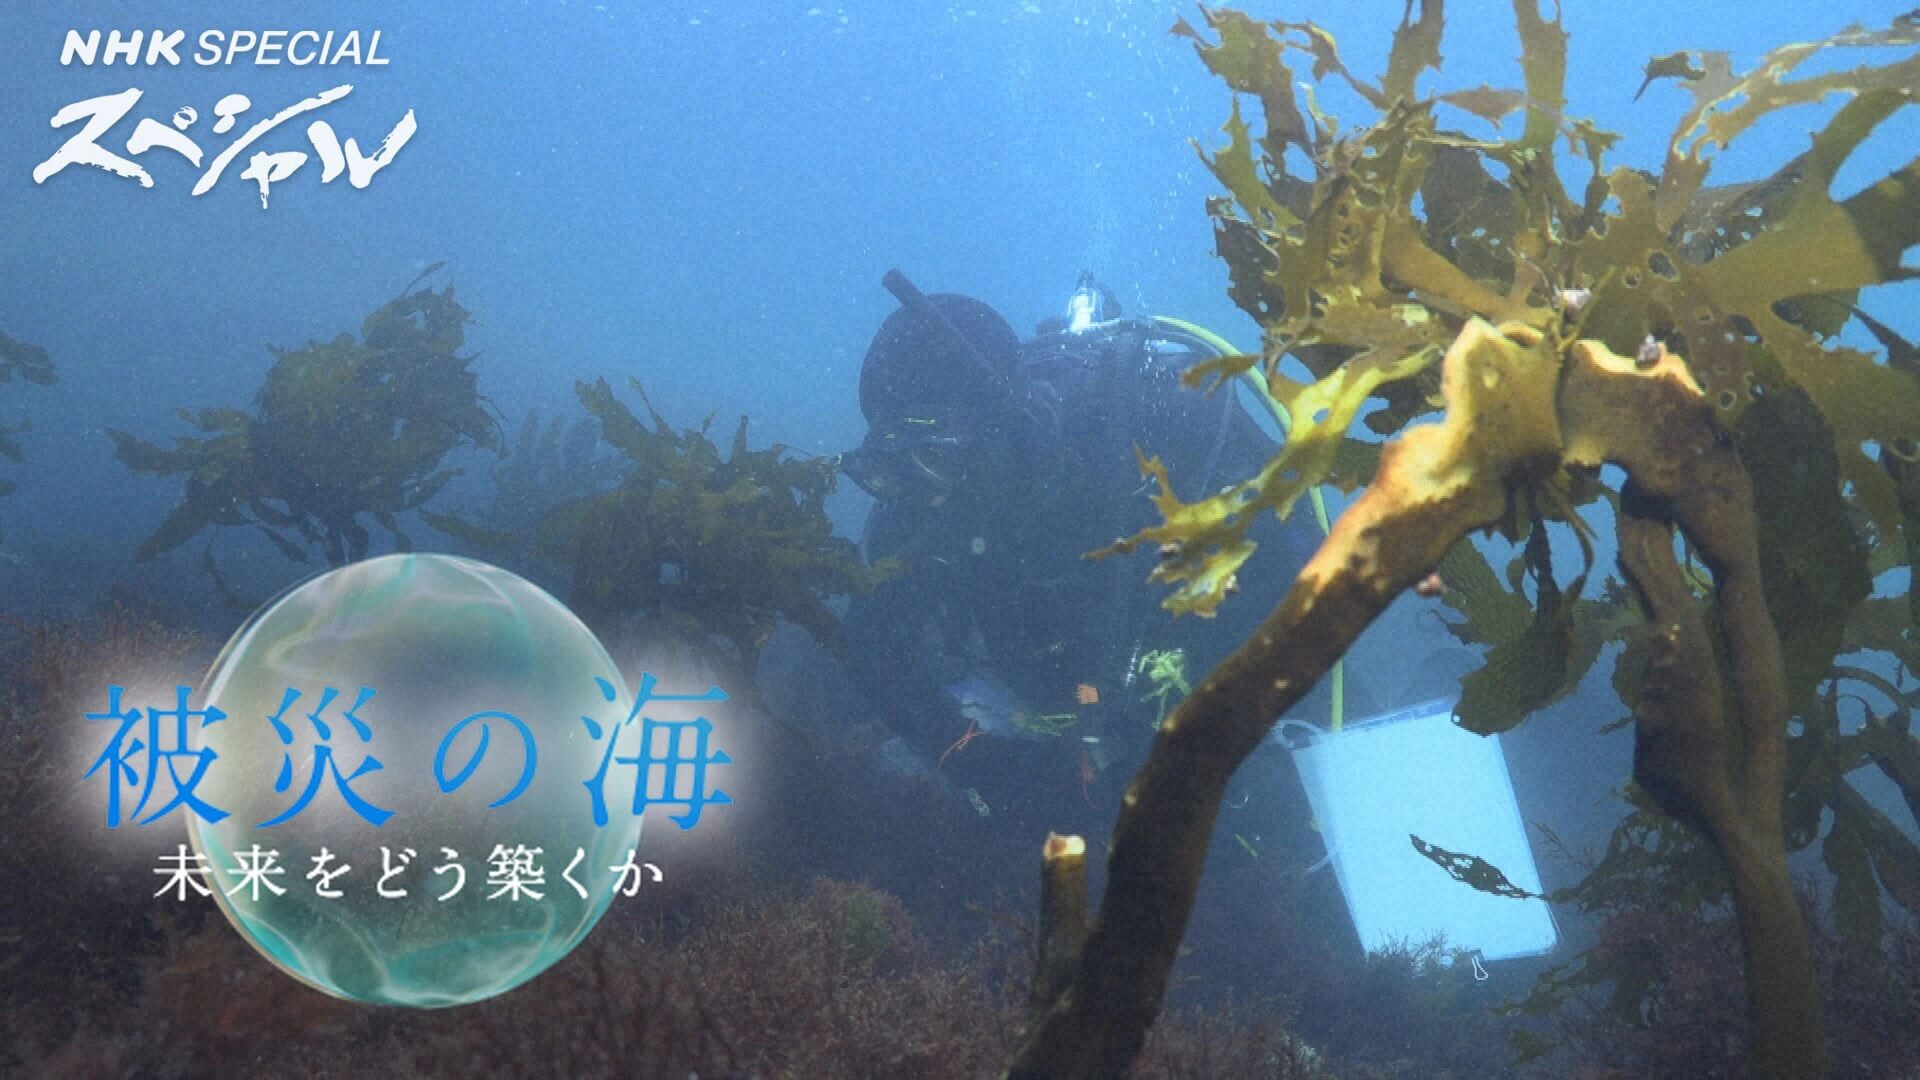 NHKスペシャル「被災の海 未来をどう築くか」